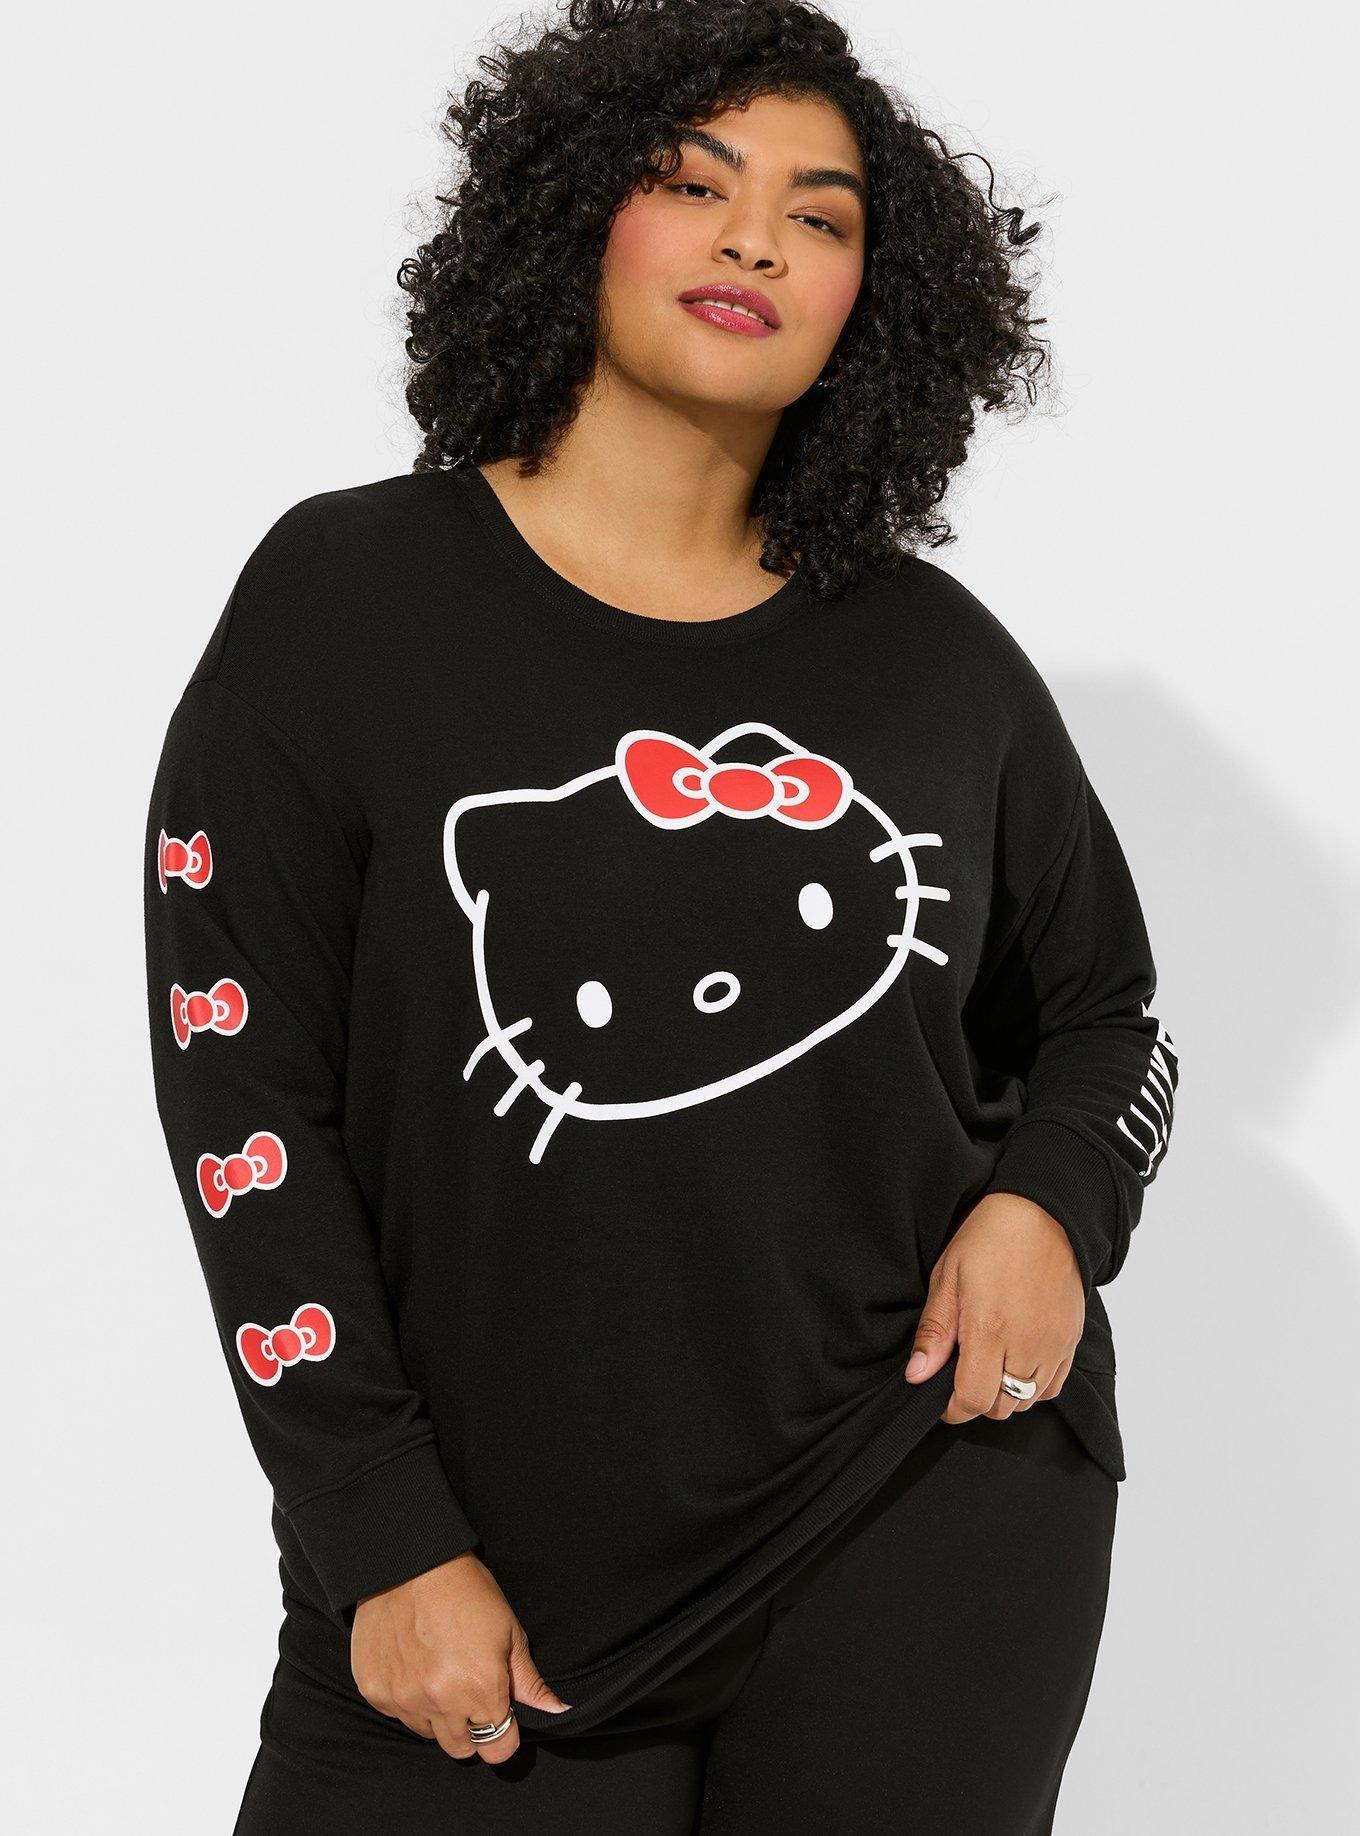 Plus Size - Tunic Sweatshirt - Cozy Fleece Hello Kitty Black - Torrid